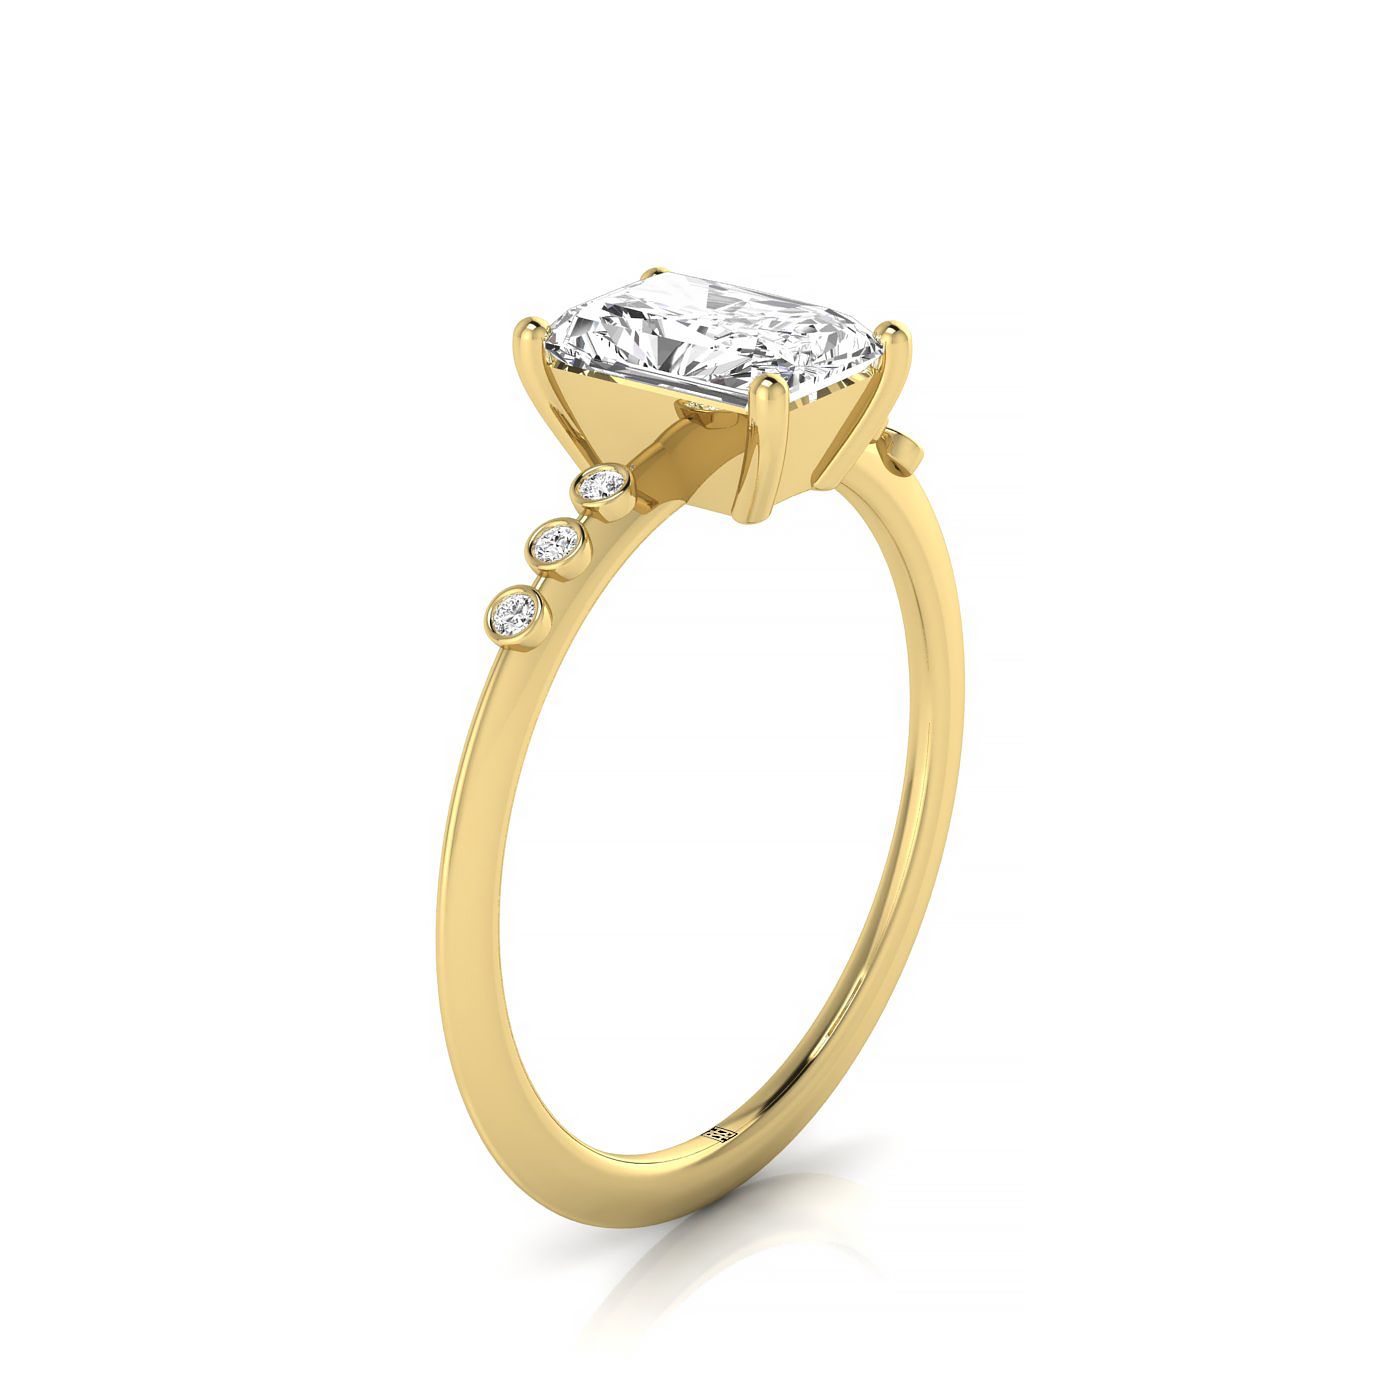 14ky Radiant Engagement Ring With 6 Bezel Set Round Diamonds On Shank